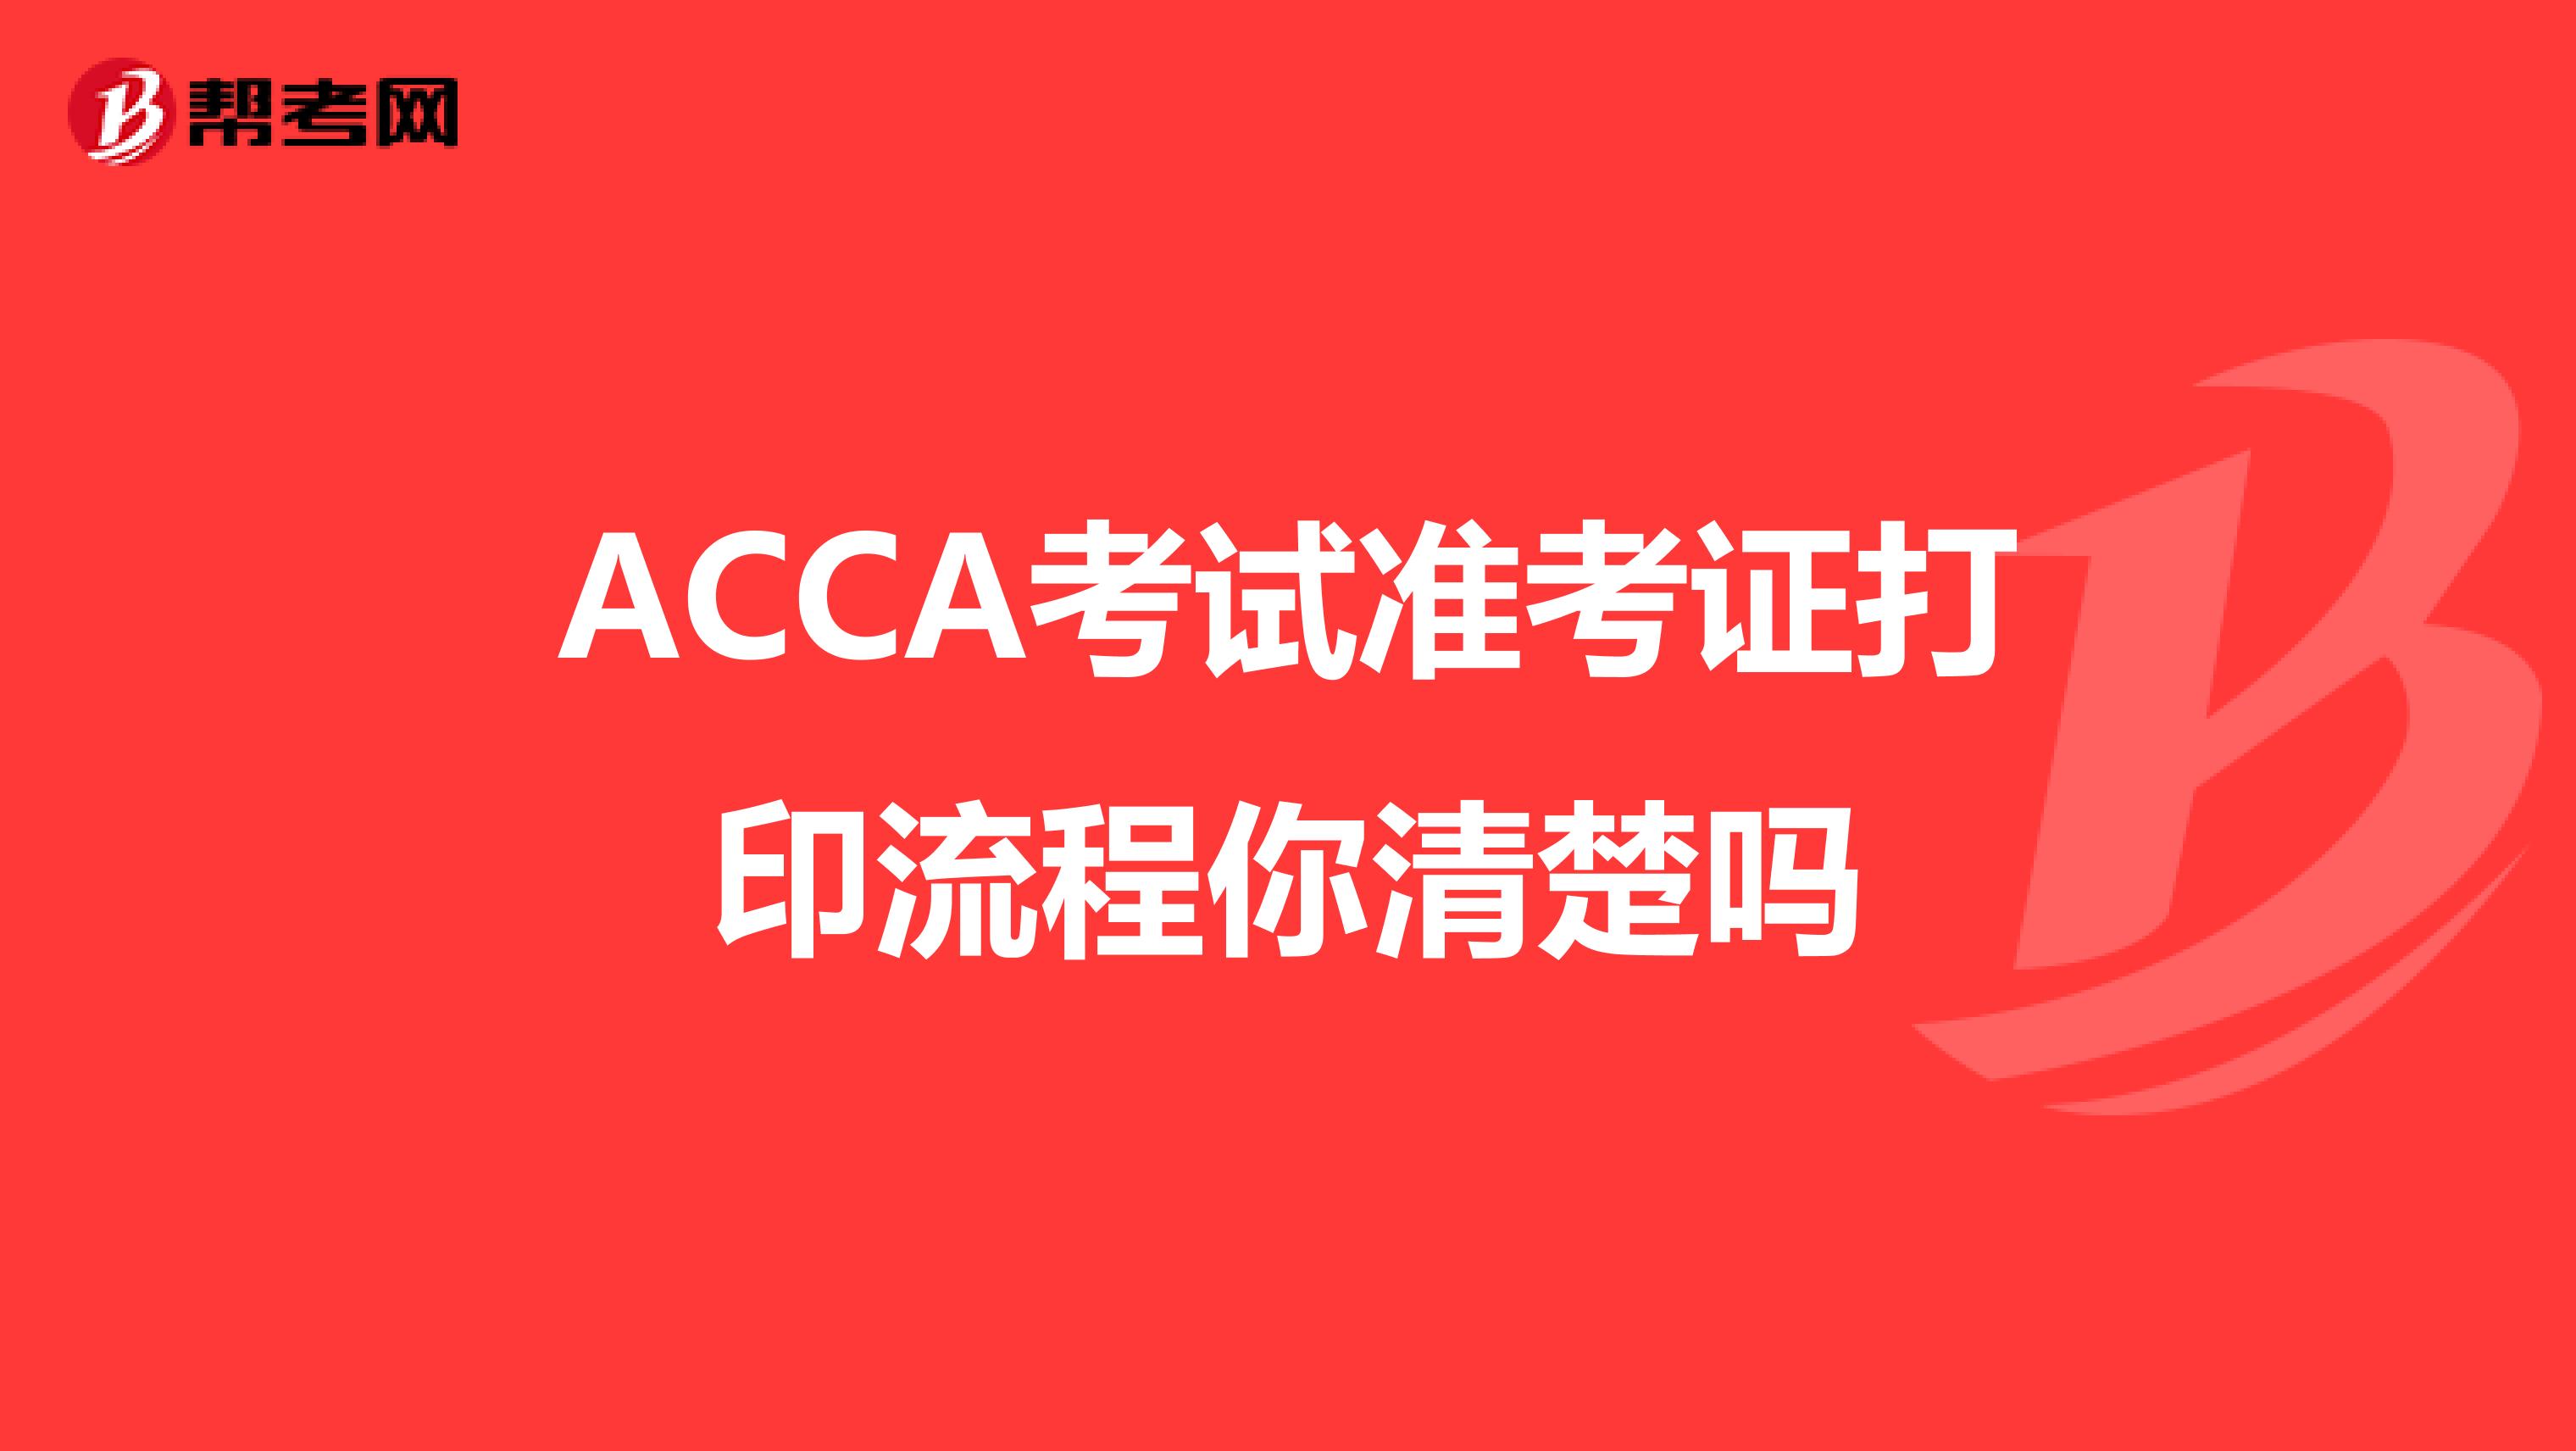 ACCA考试准考证打印流程你清楚吗